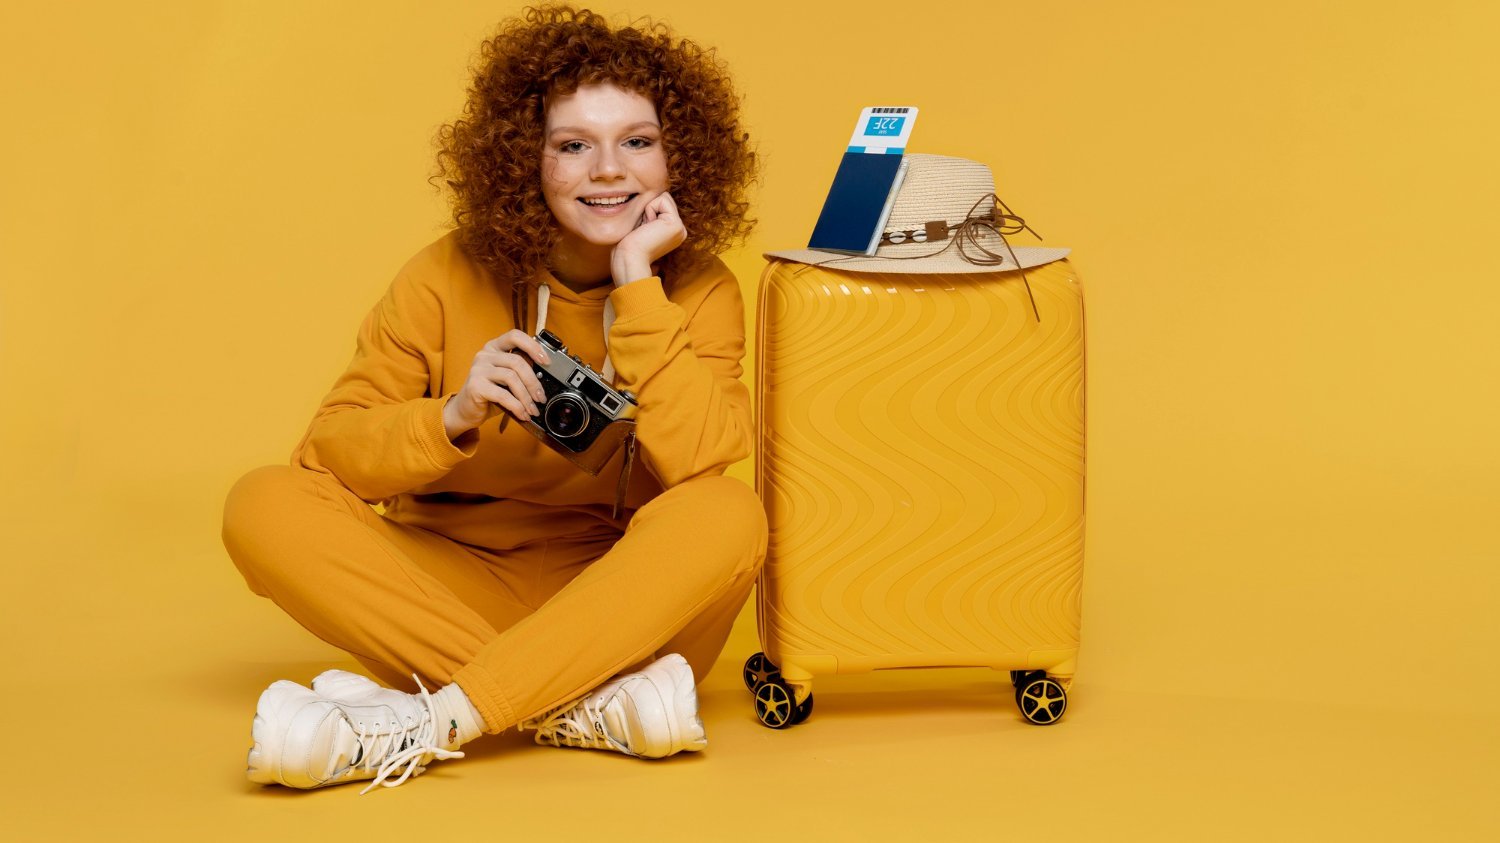 Mulher sorridente sentada no chão, ao lado de sua mala de viagem, segurando uma câmera antiga na mão